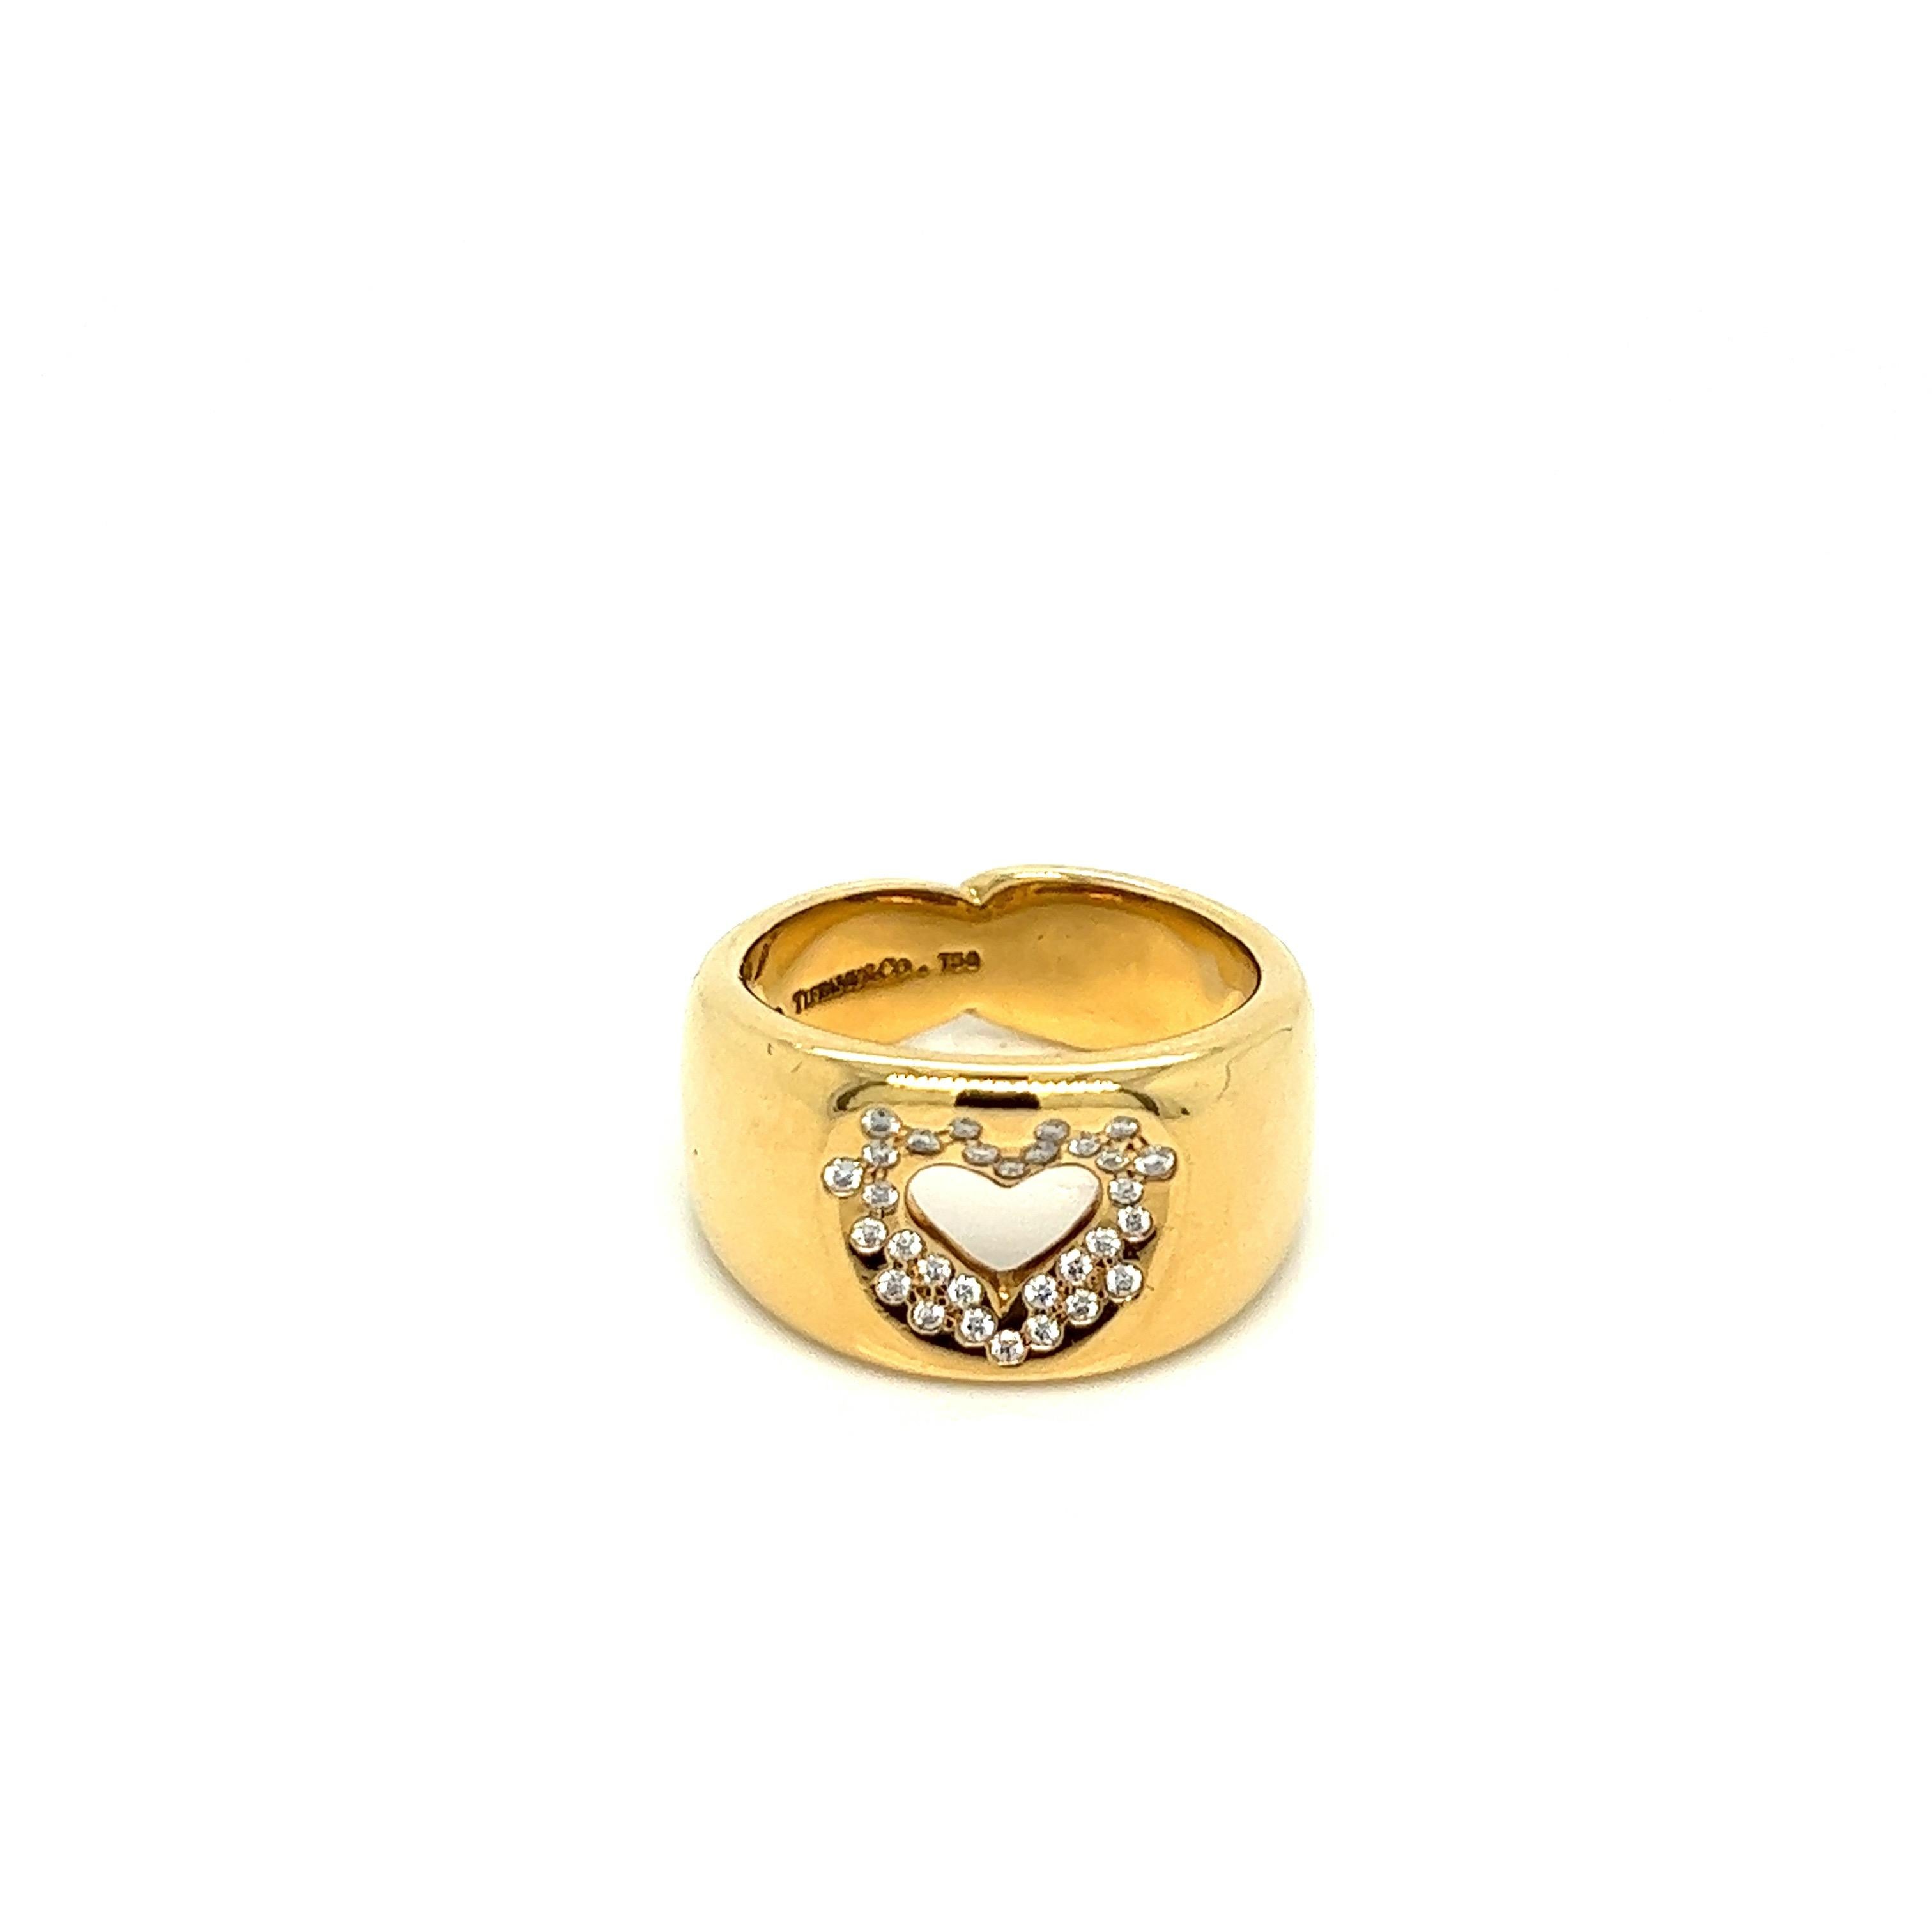 Bague en or avec diamant en forme de cœur Tiffany & Co.

Diamants de taille ronde d'environ 0,30 carat, or jaune 18 carats ; marqué Tiffany & Co., 750

Taille : 6.75 US, largeur 11.5 mm
Poids total : 13,7 grammes